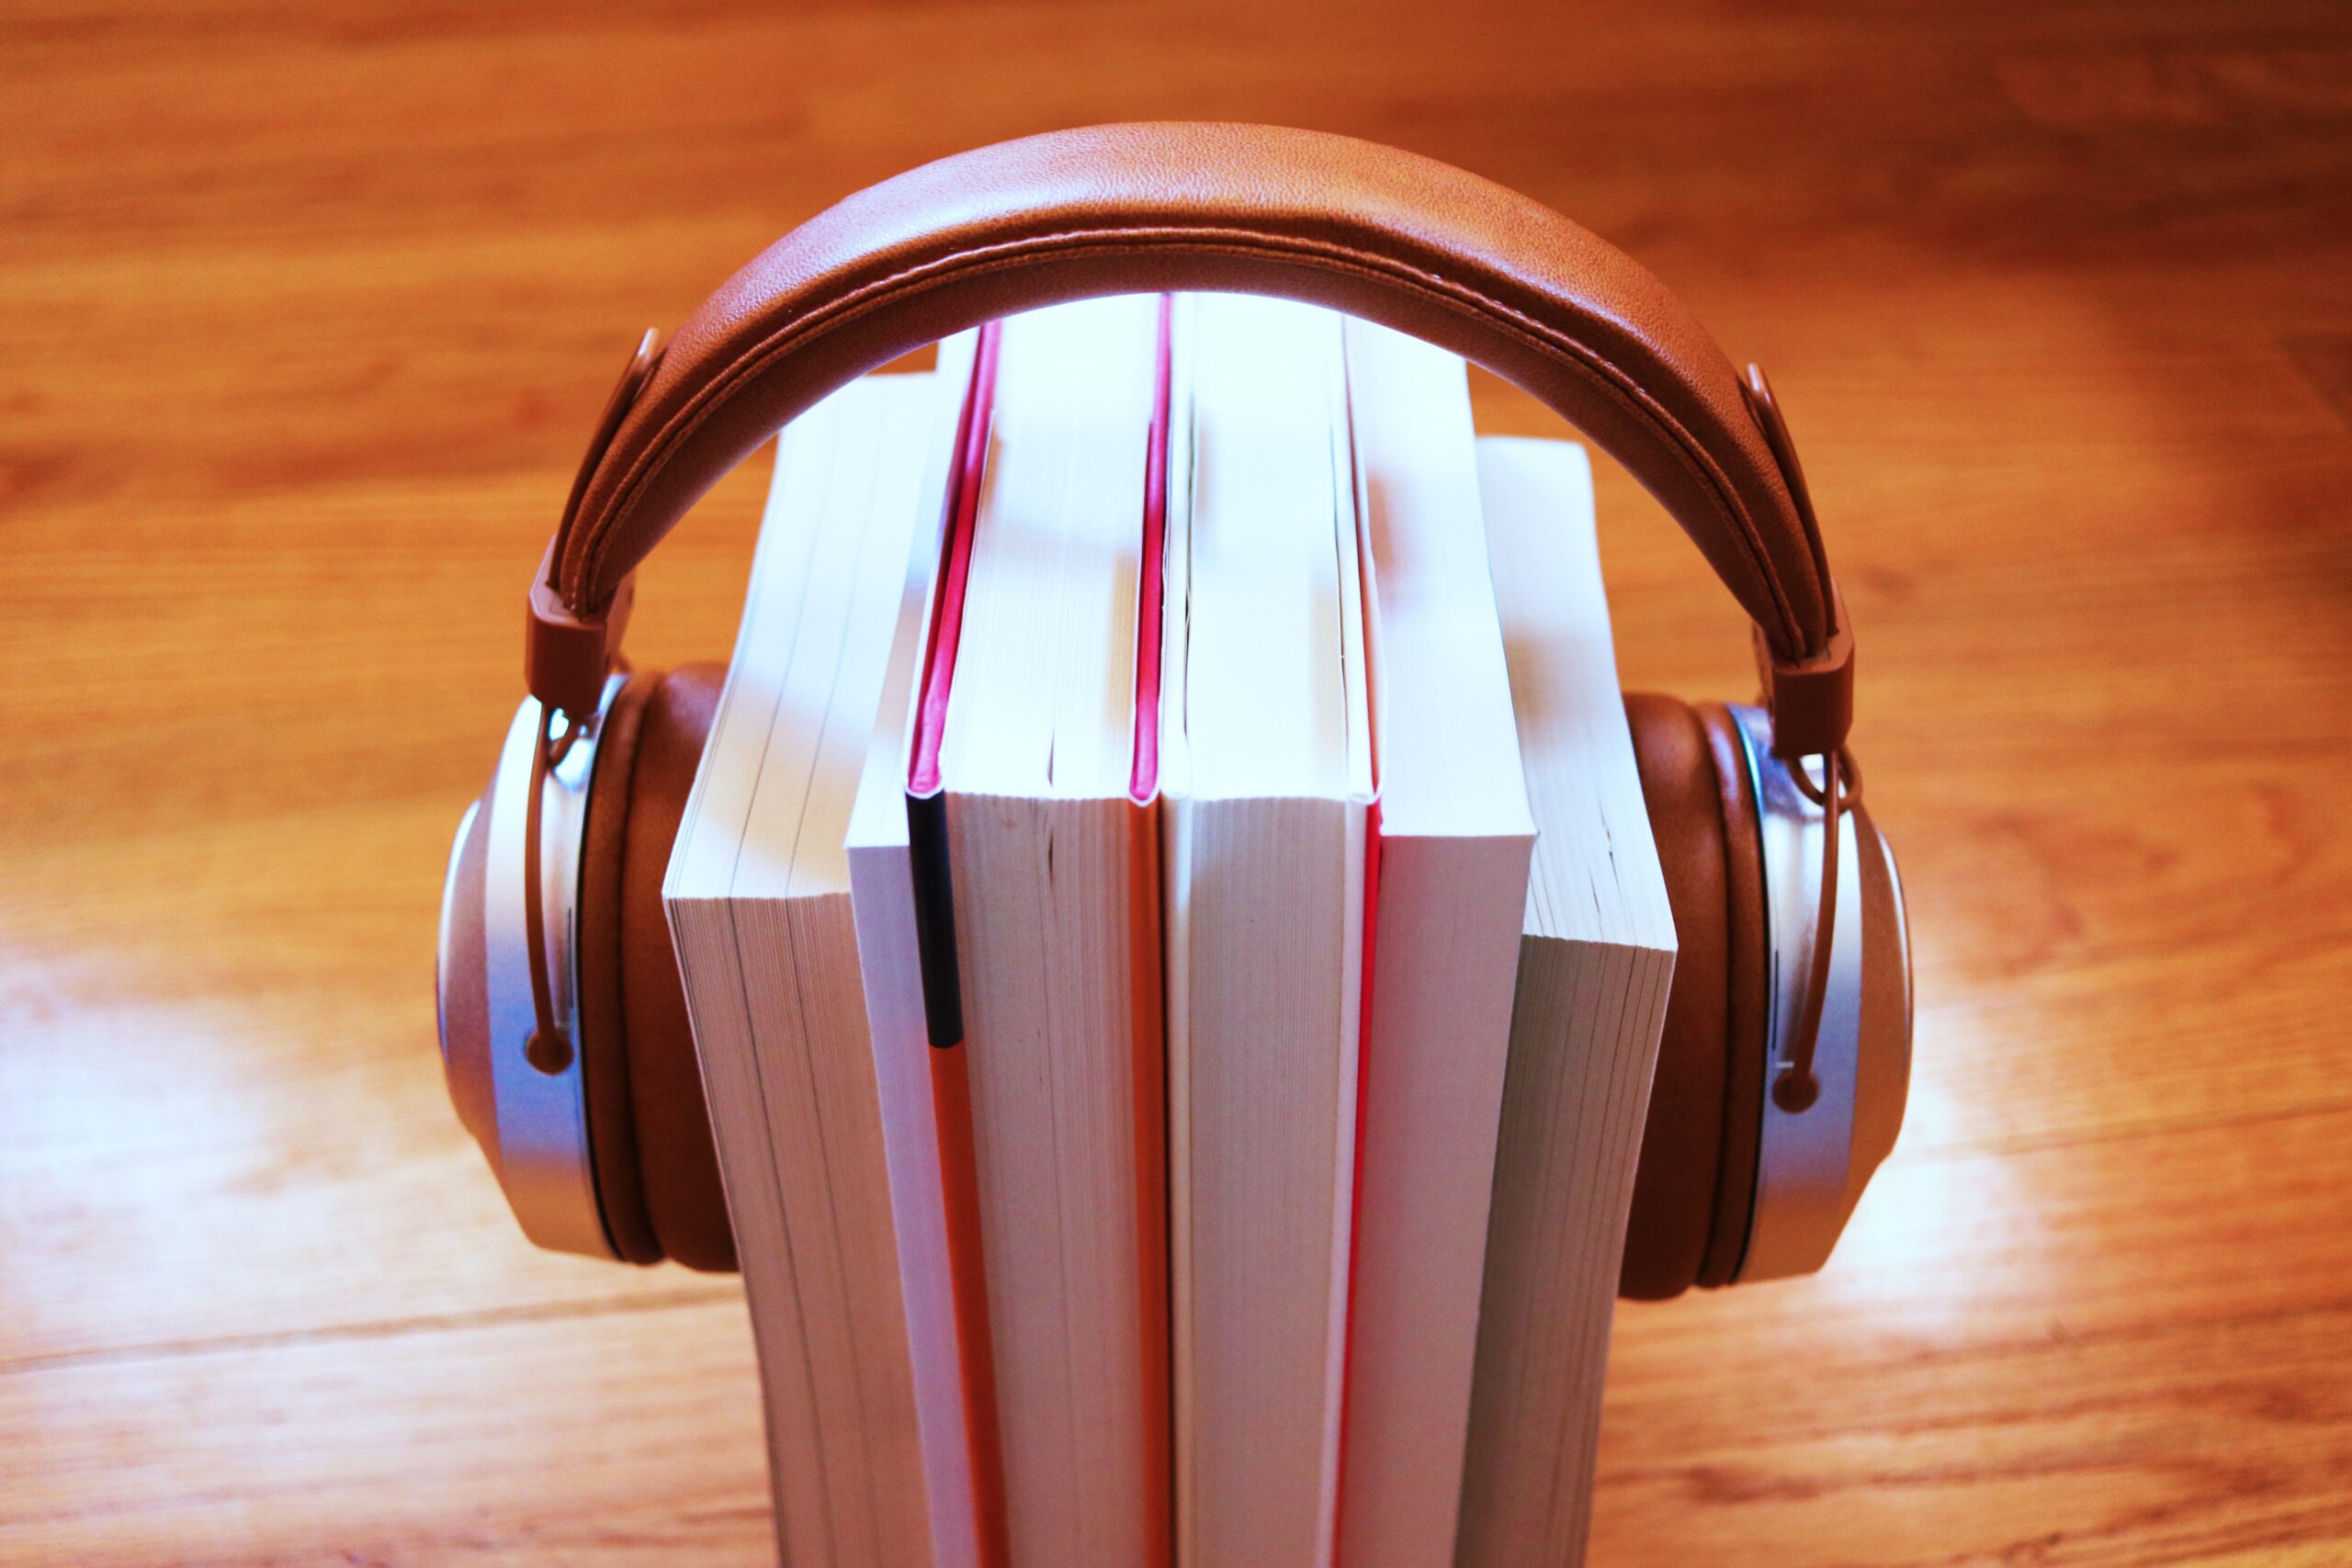 Headphones on books